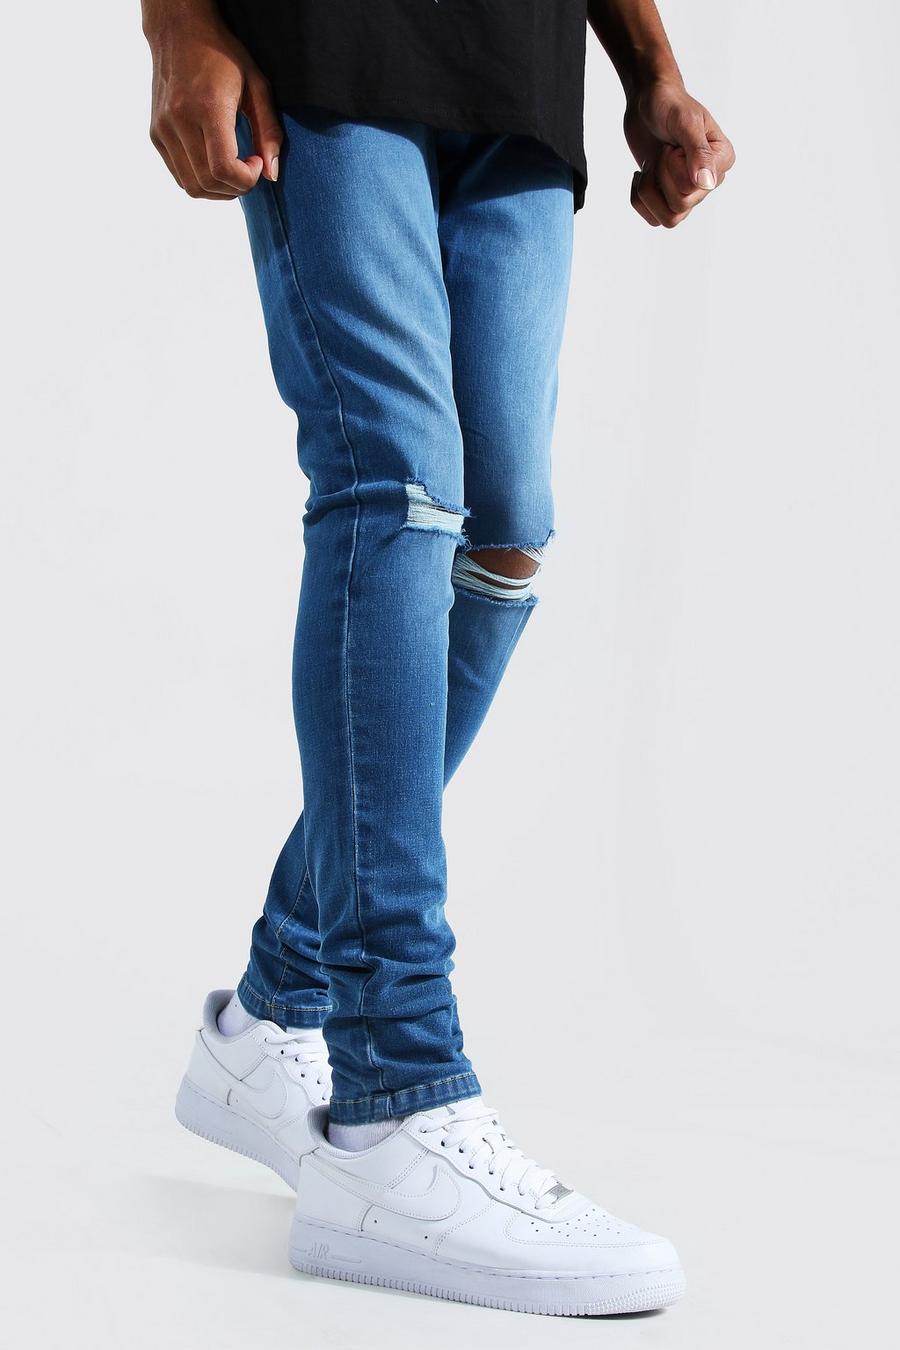 כחול בהיר azzurro סקיני ג'ינס ripped בברכיים לגברים גבוהים